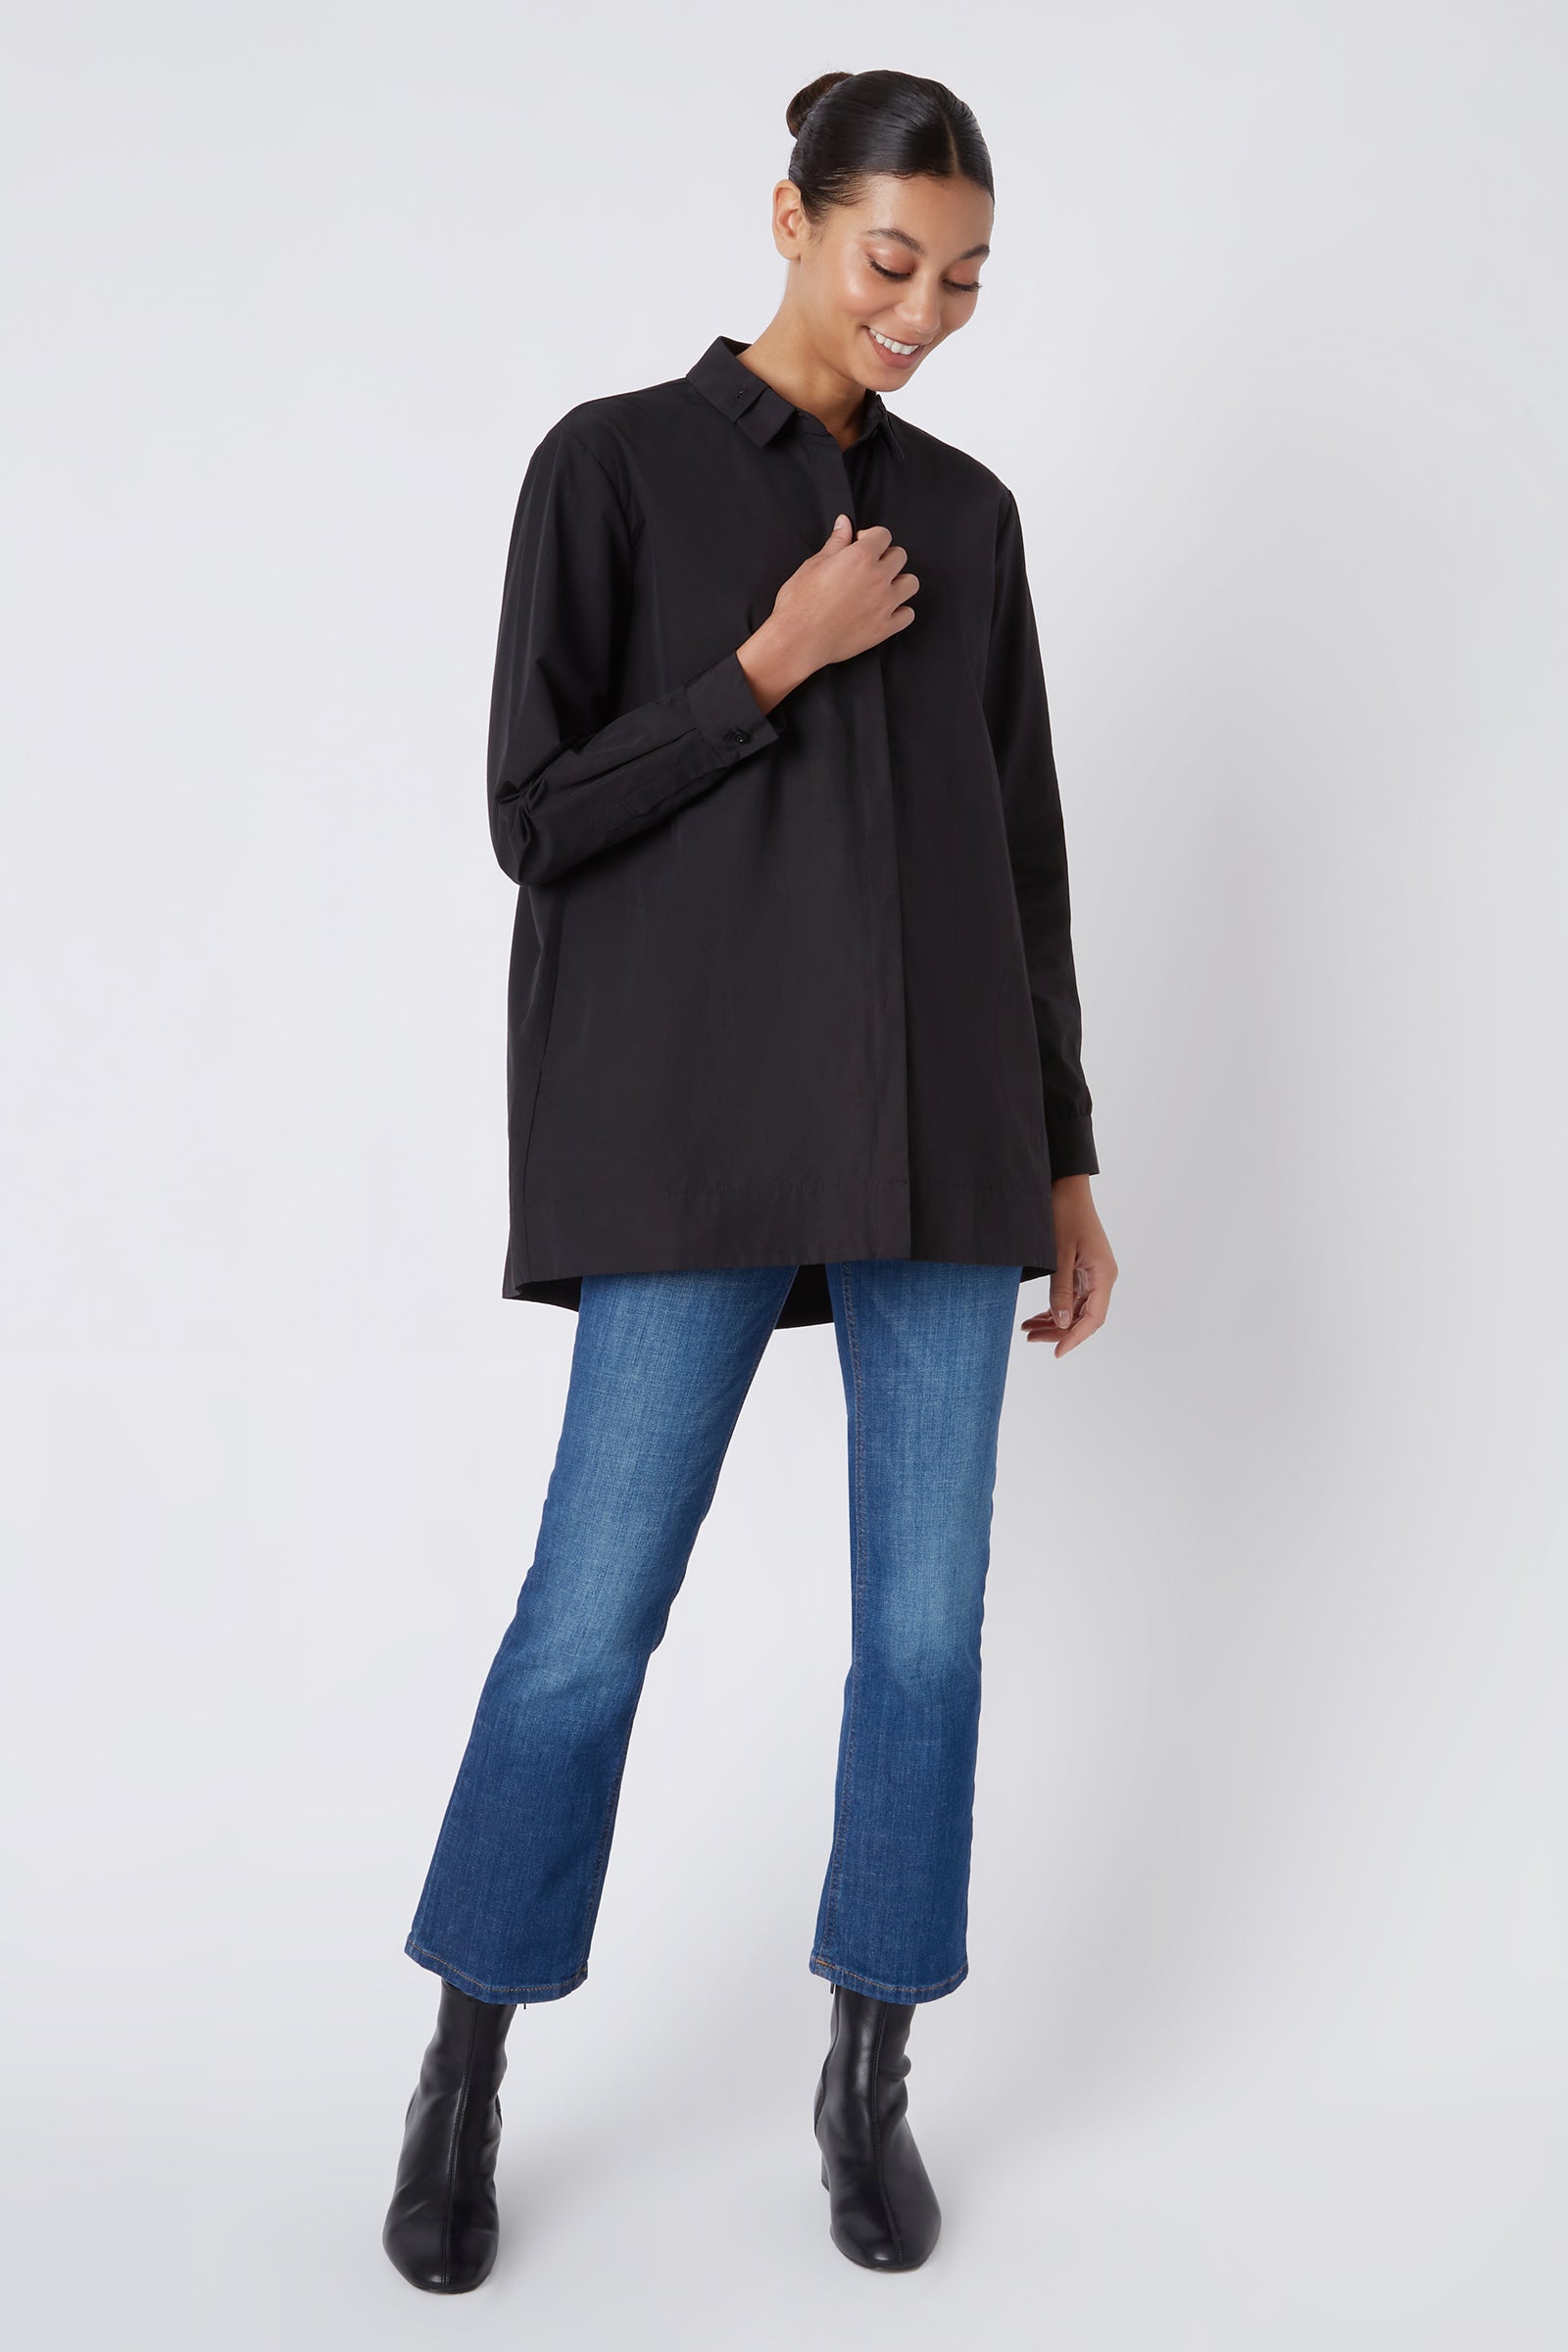 Kal Rieman Lori Tab Collar Tunic in Black on Model Full Front View